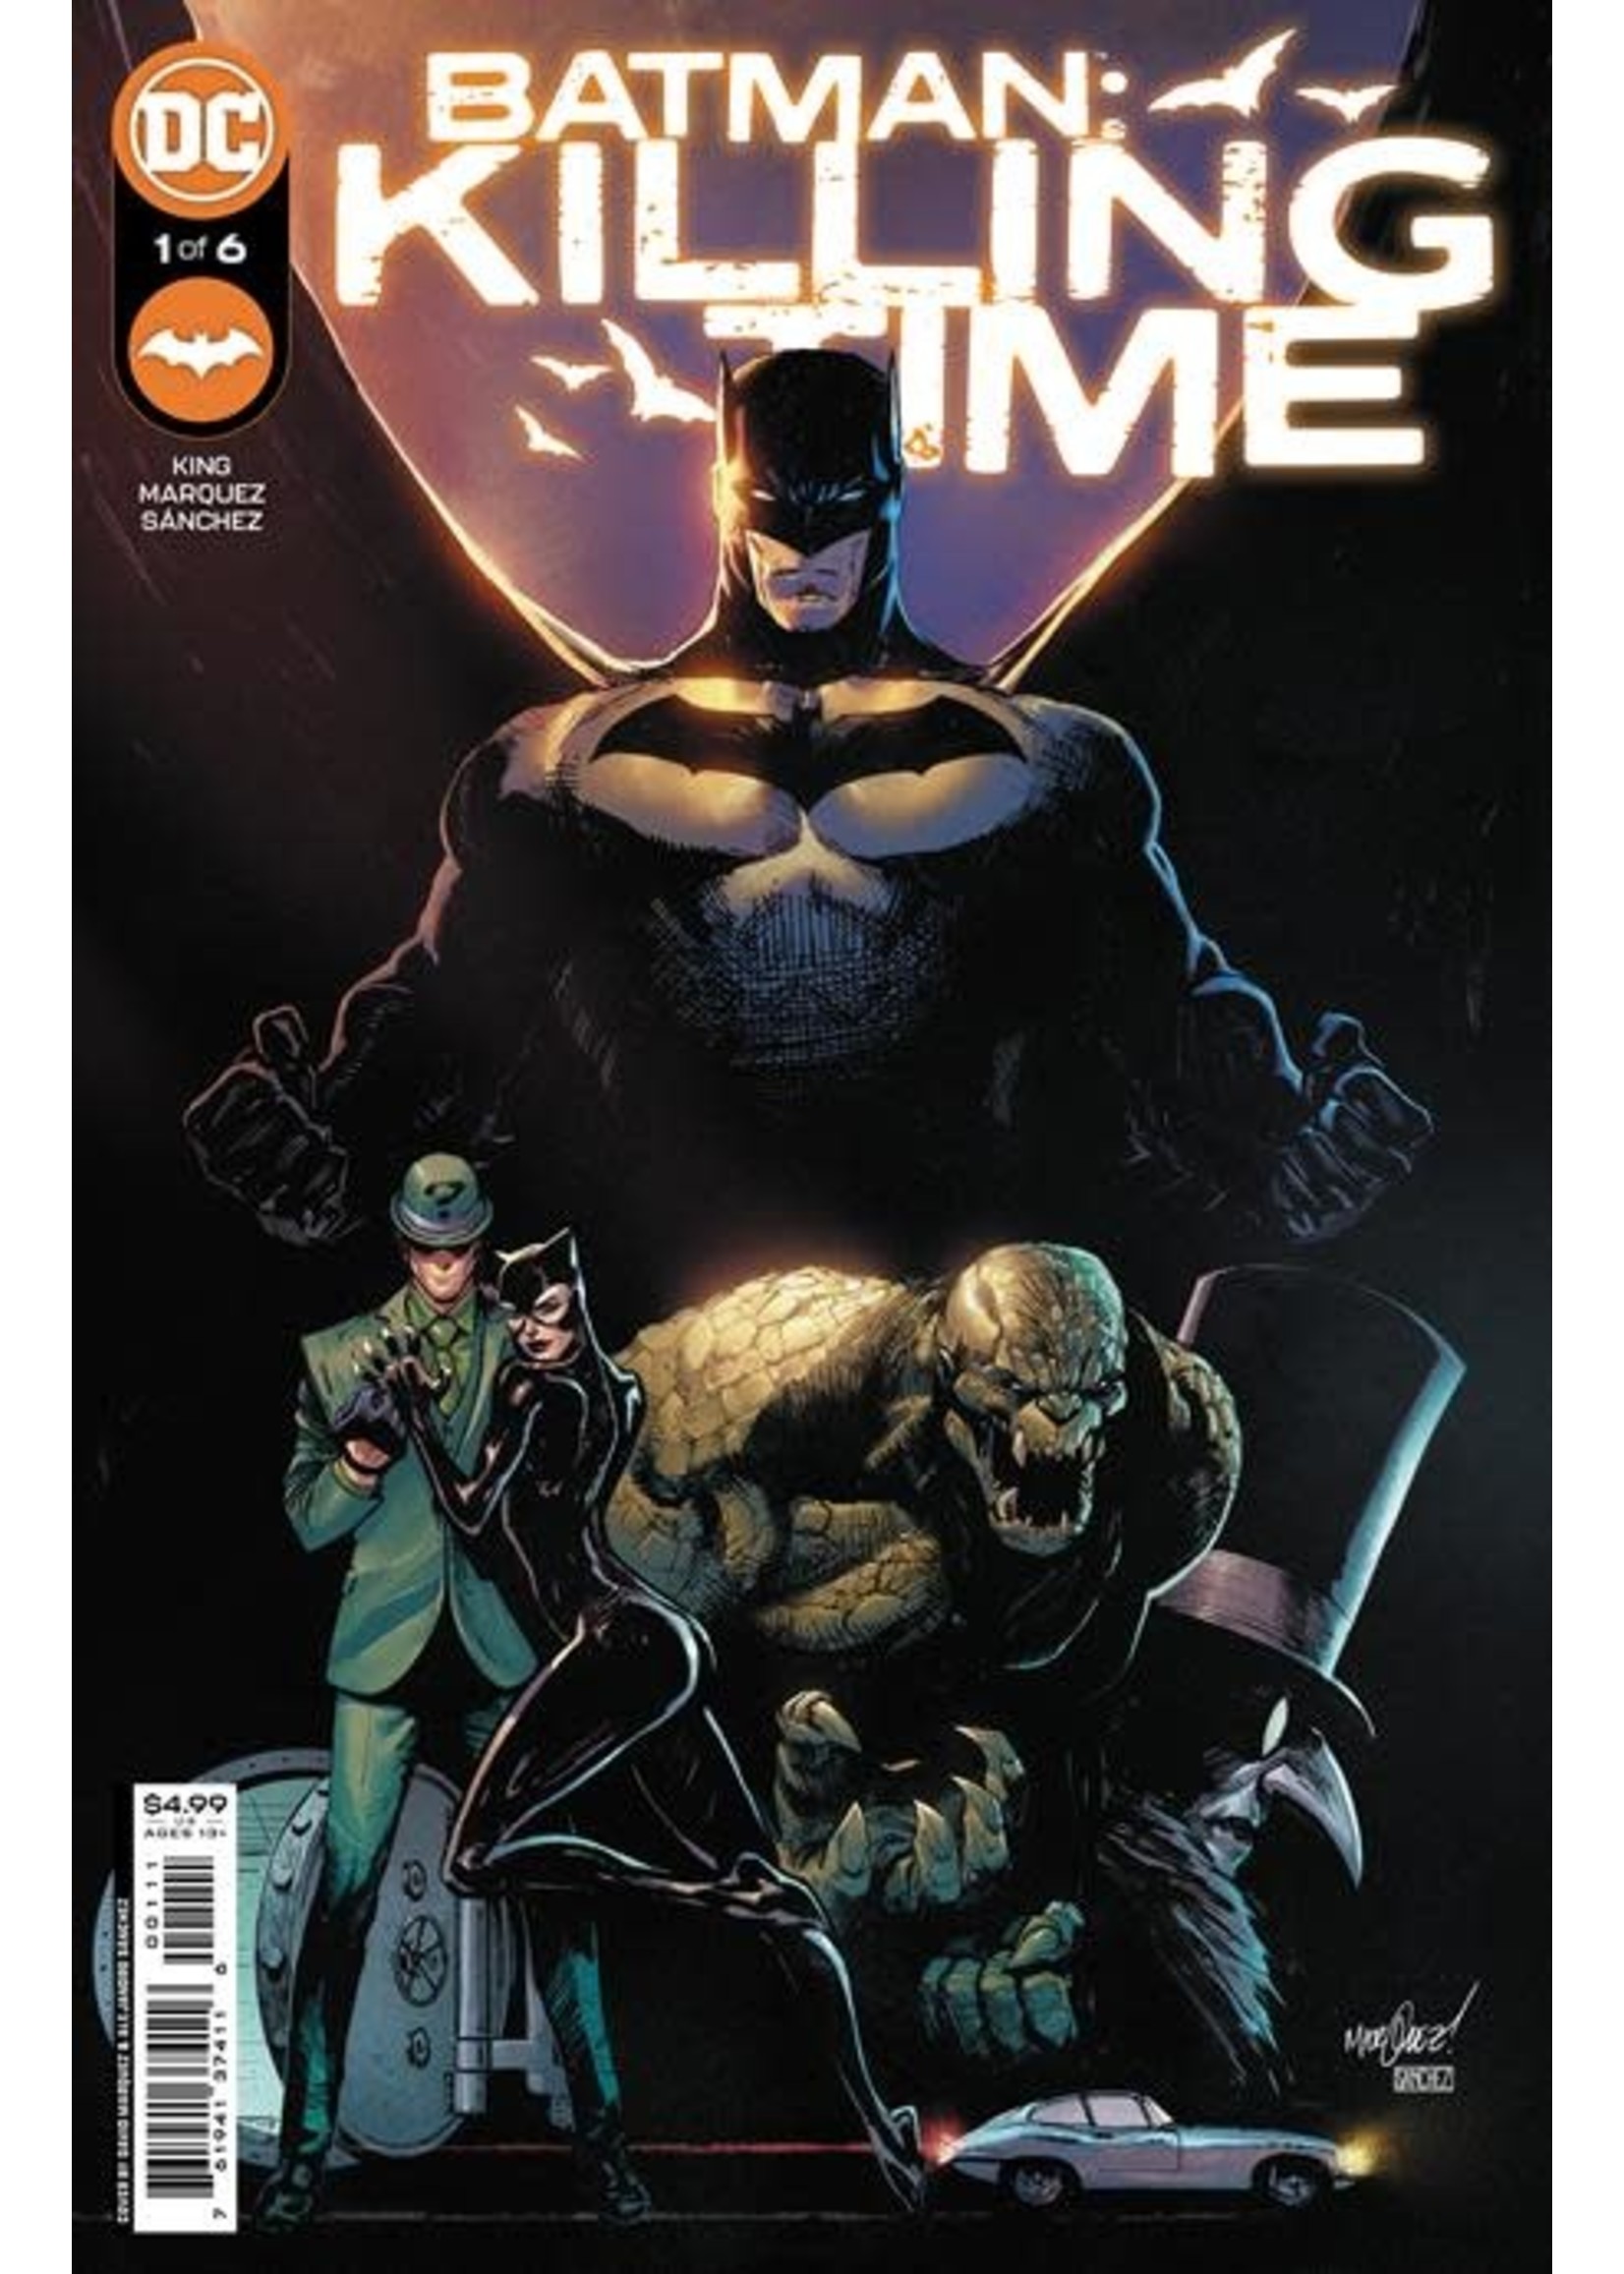 DC COMICS BATMAN KILLING TIME #1 (OF 6) CVR A DAVID MARQUEZ